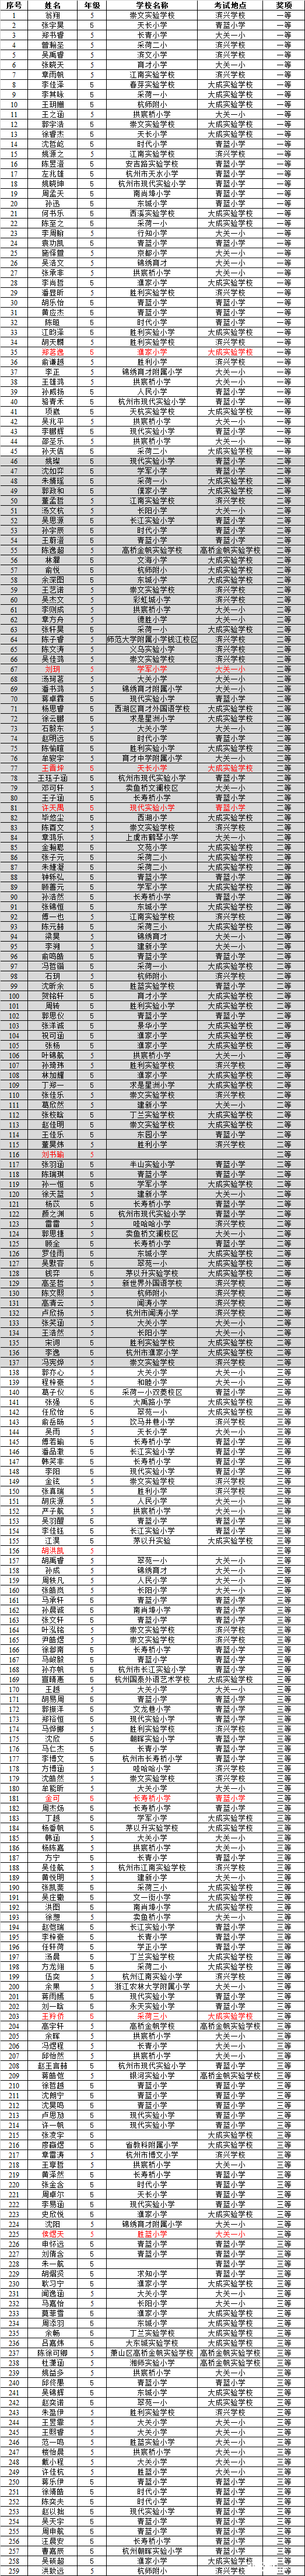 2016第14届走美杯杭州第一赛区五年级获奖名单1